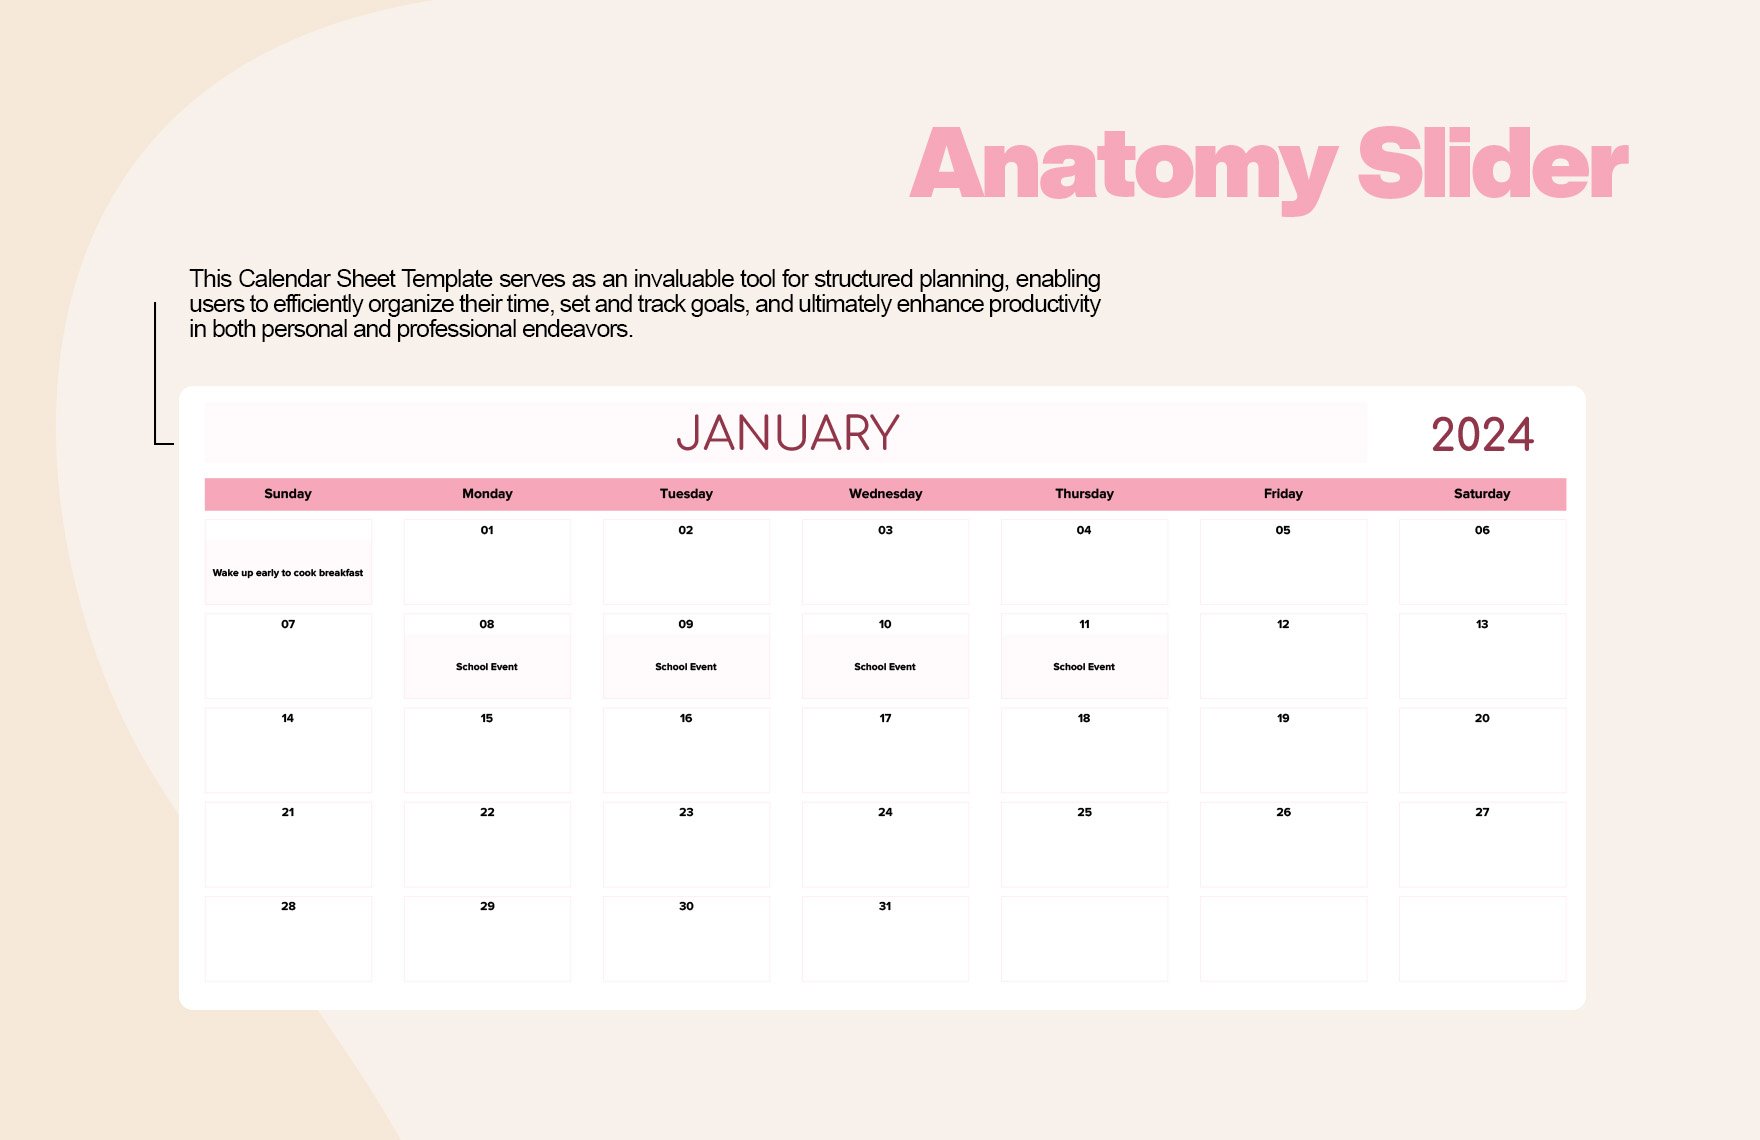 Calendar Sheet Template